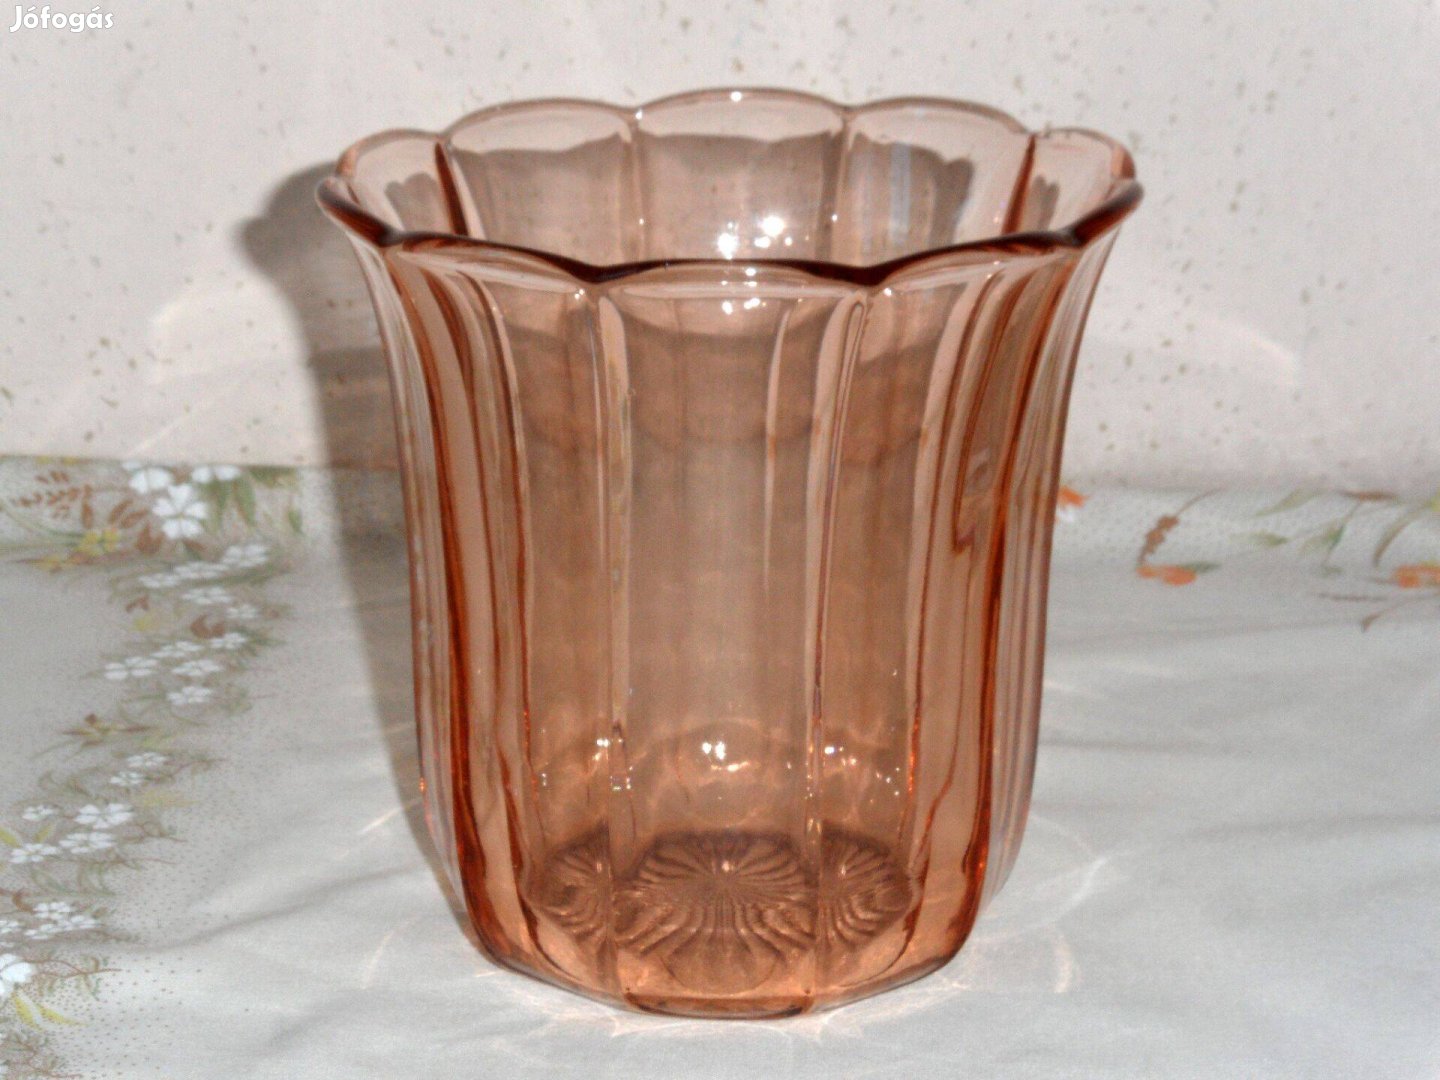 Art deco korall színű üveg váza, díszüveg